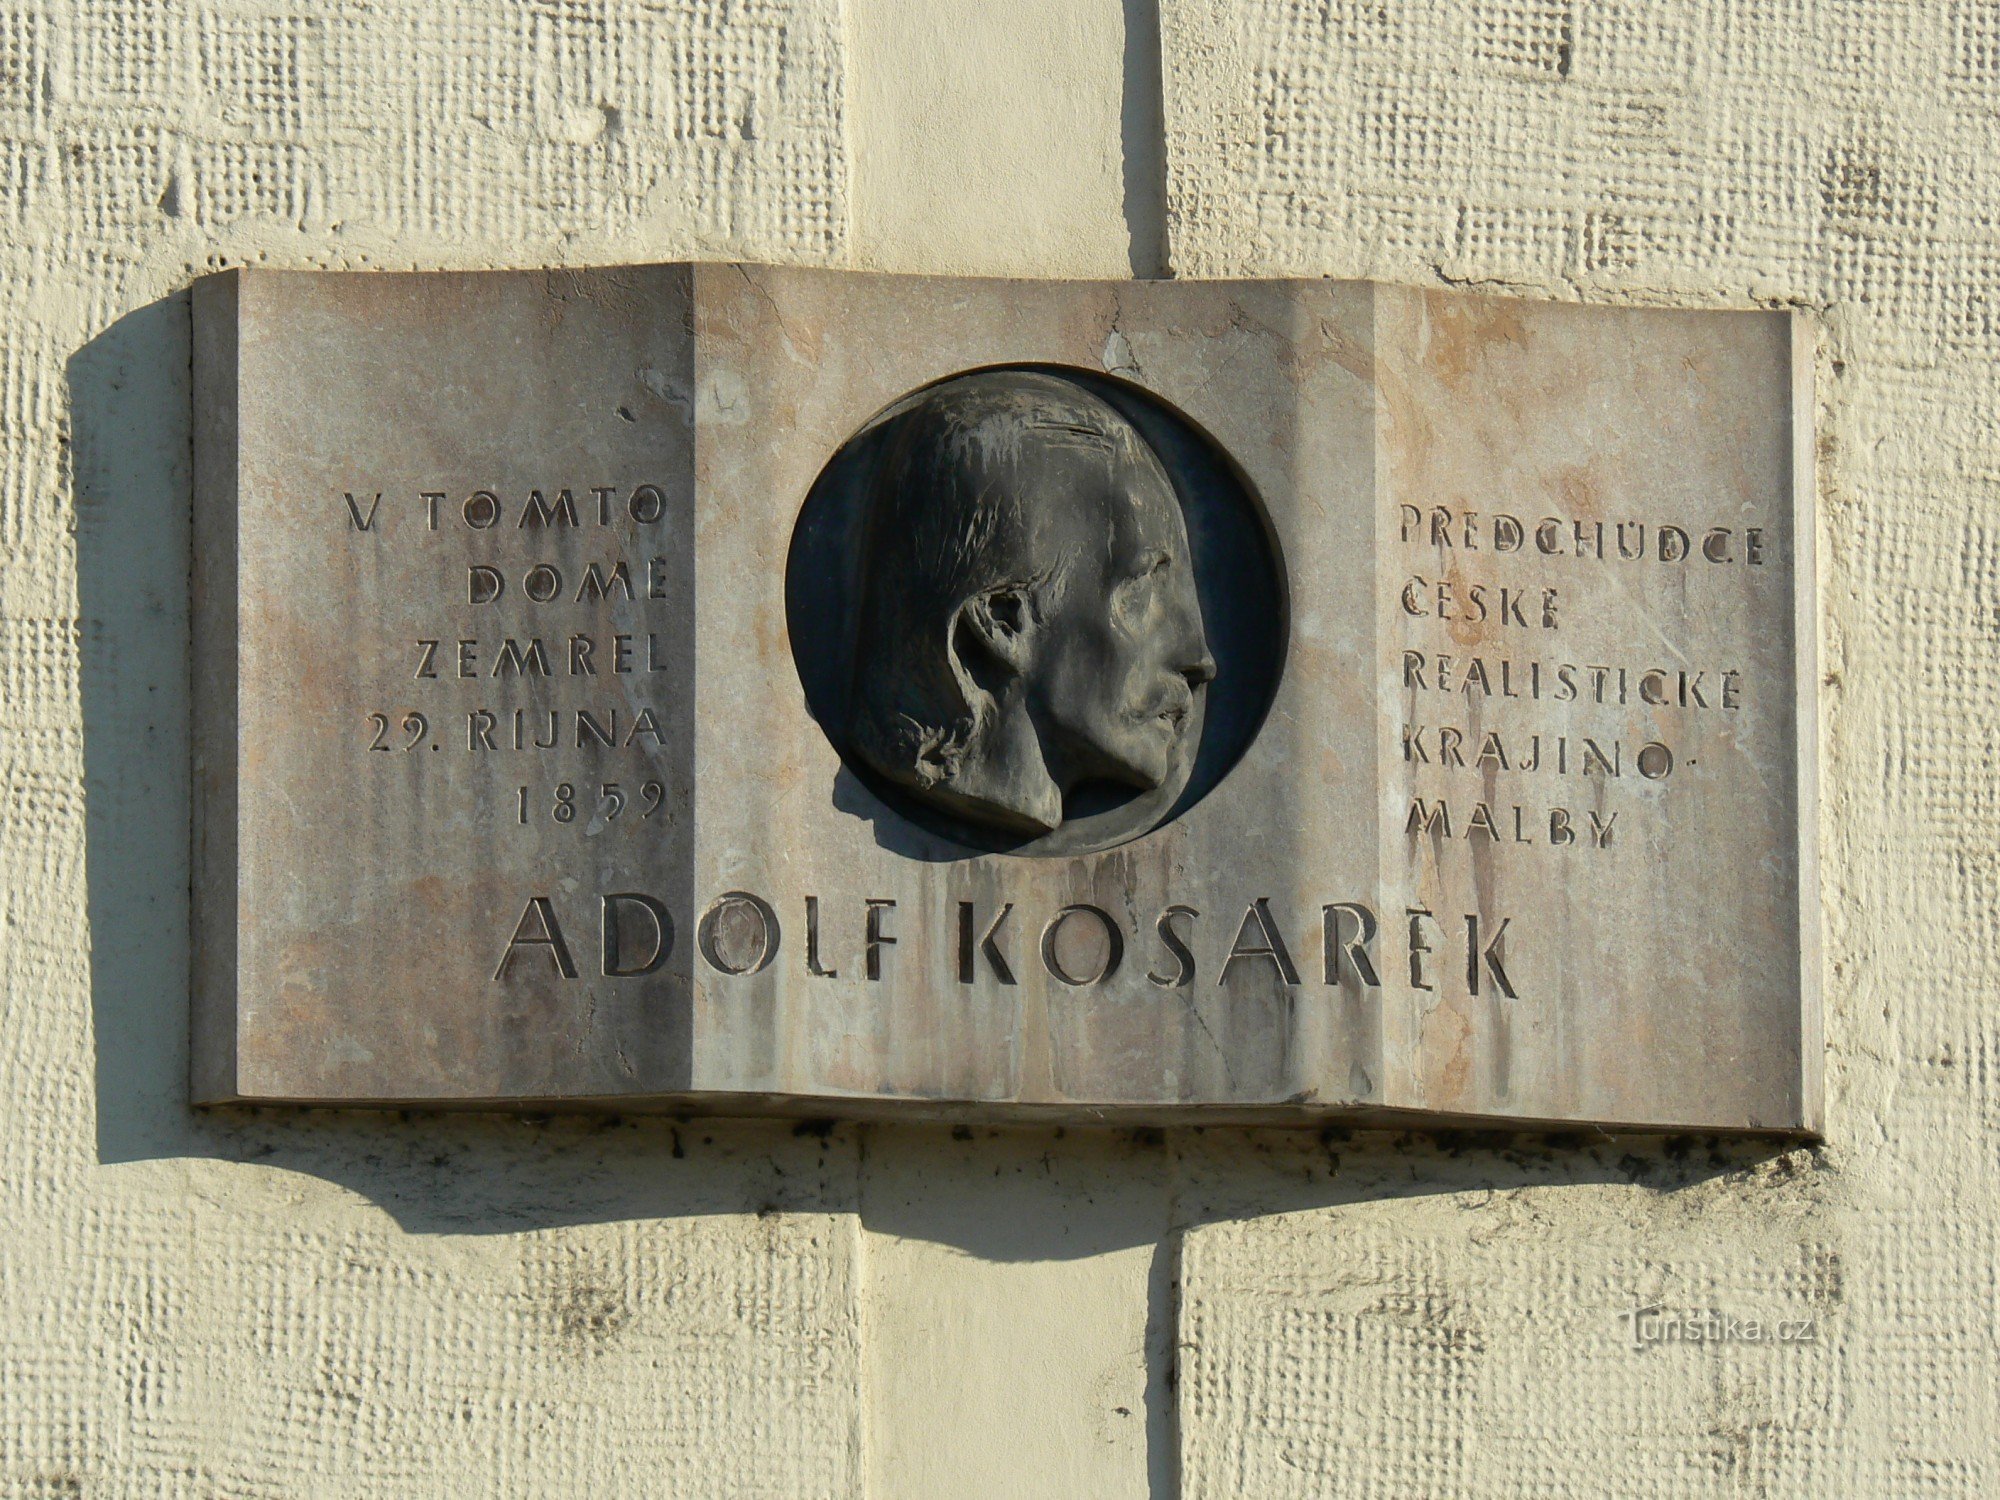 Spominska plošča Adolf Kosárek